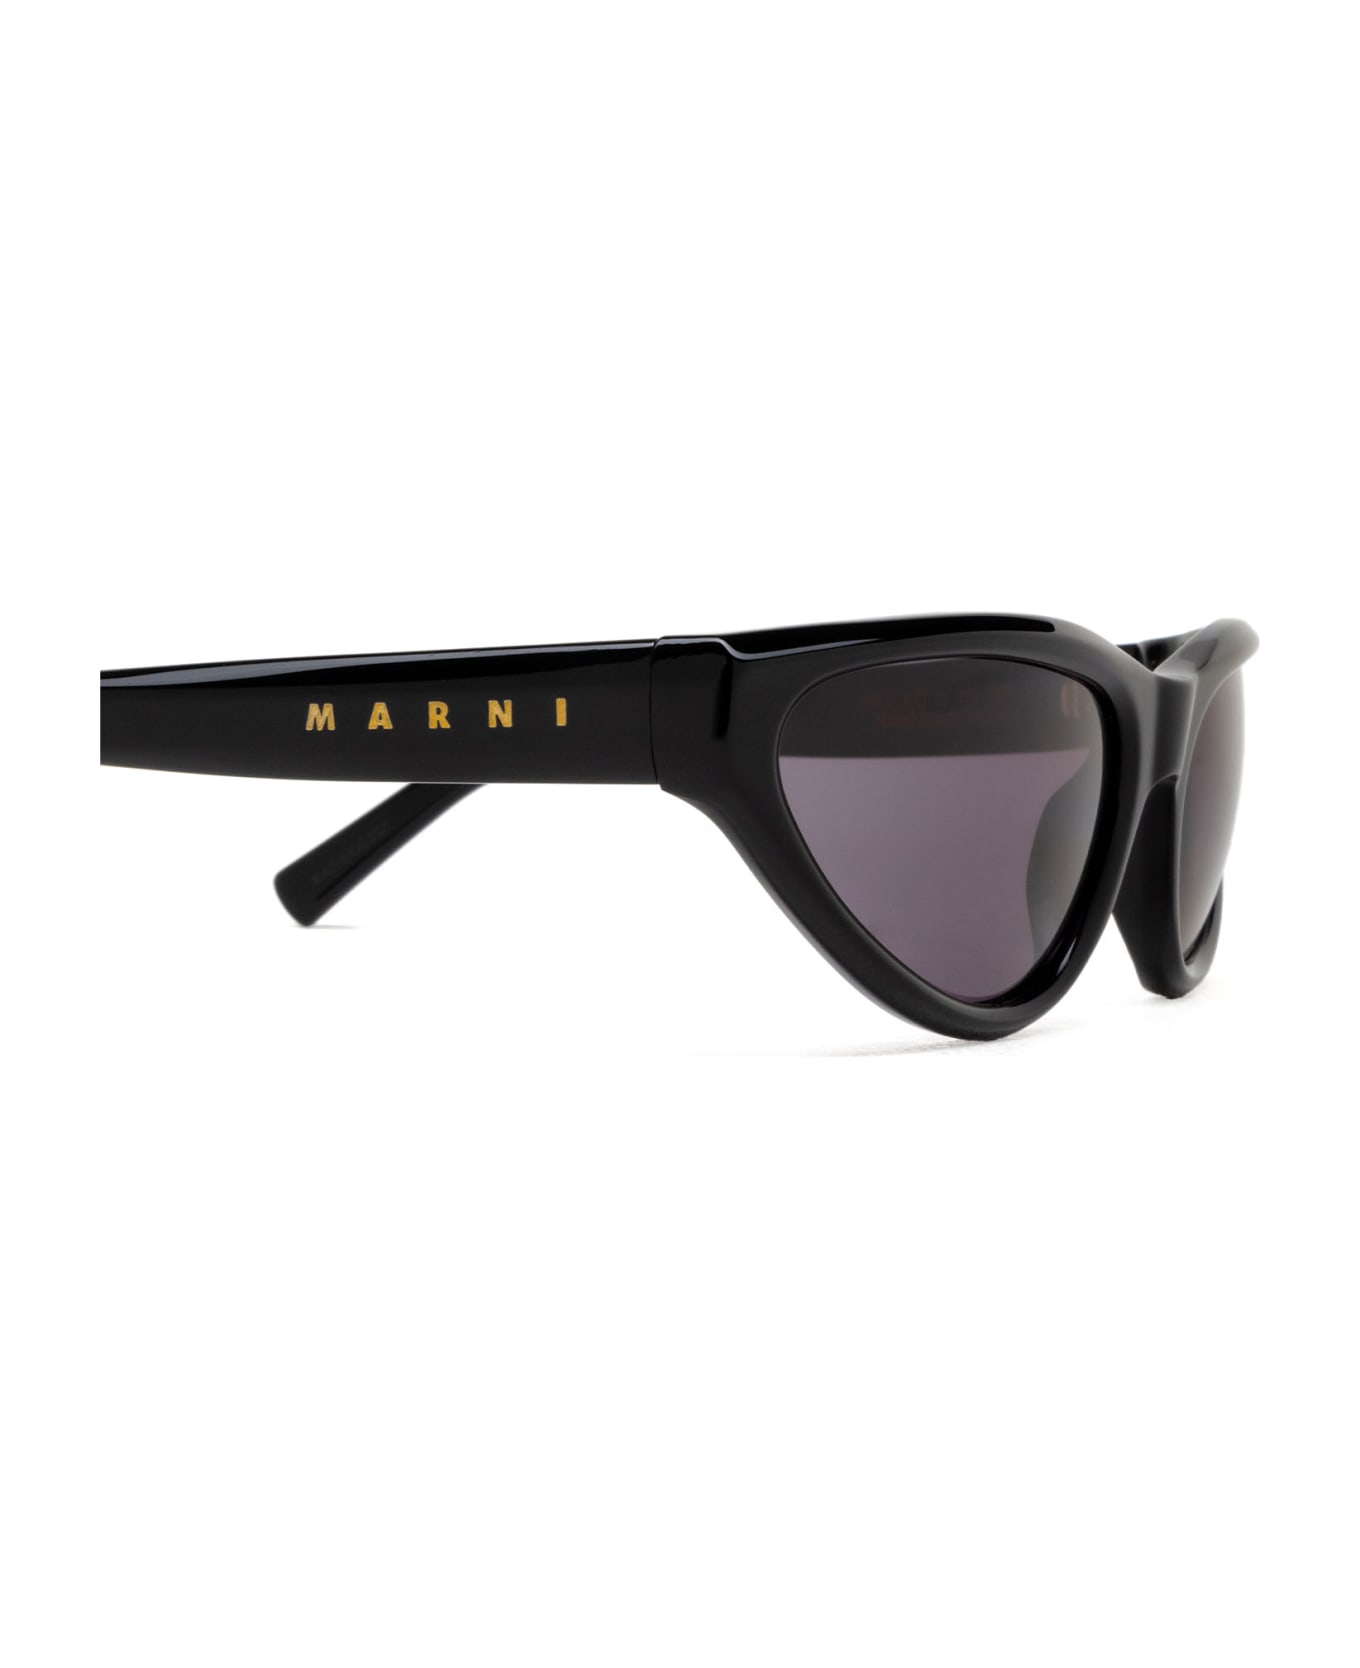 Marni Eyewear Mavericks Black Sunglasses - Black